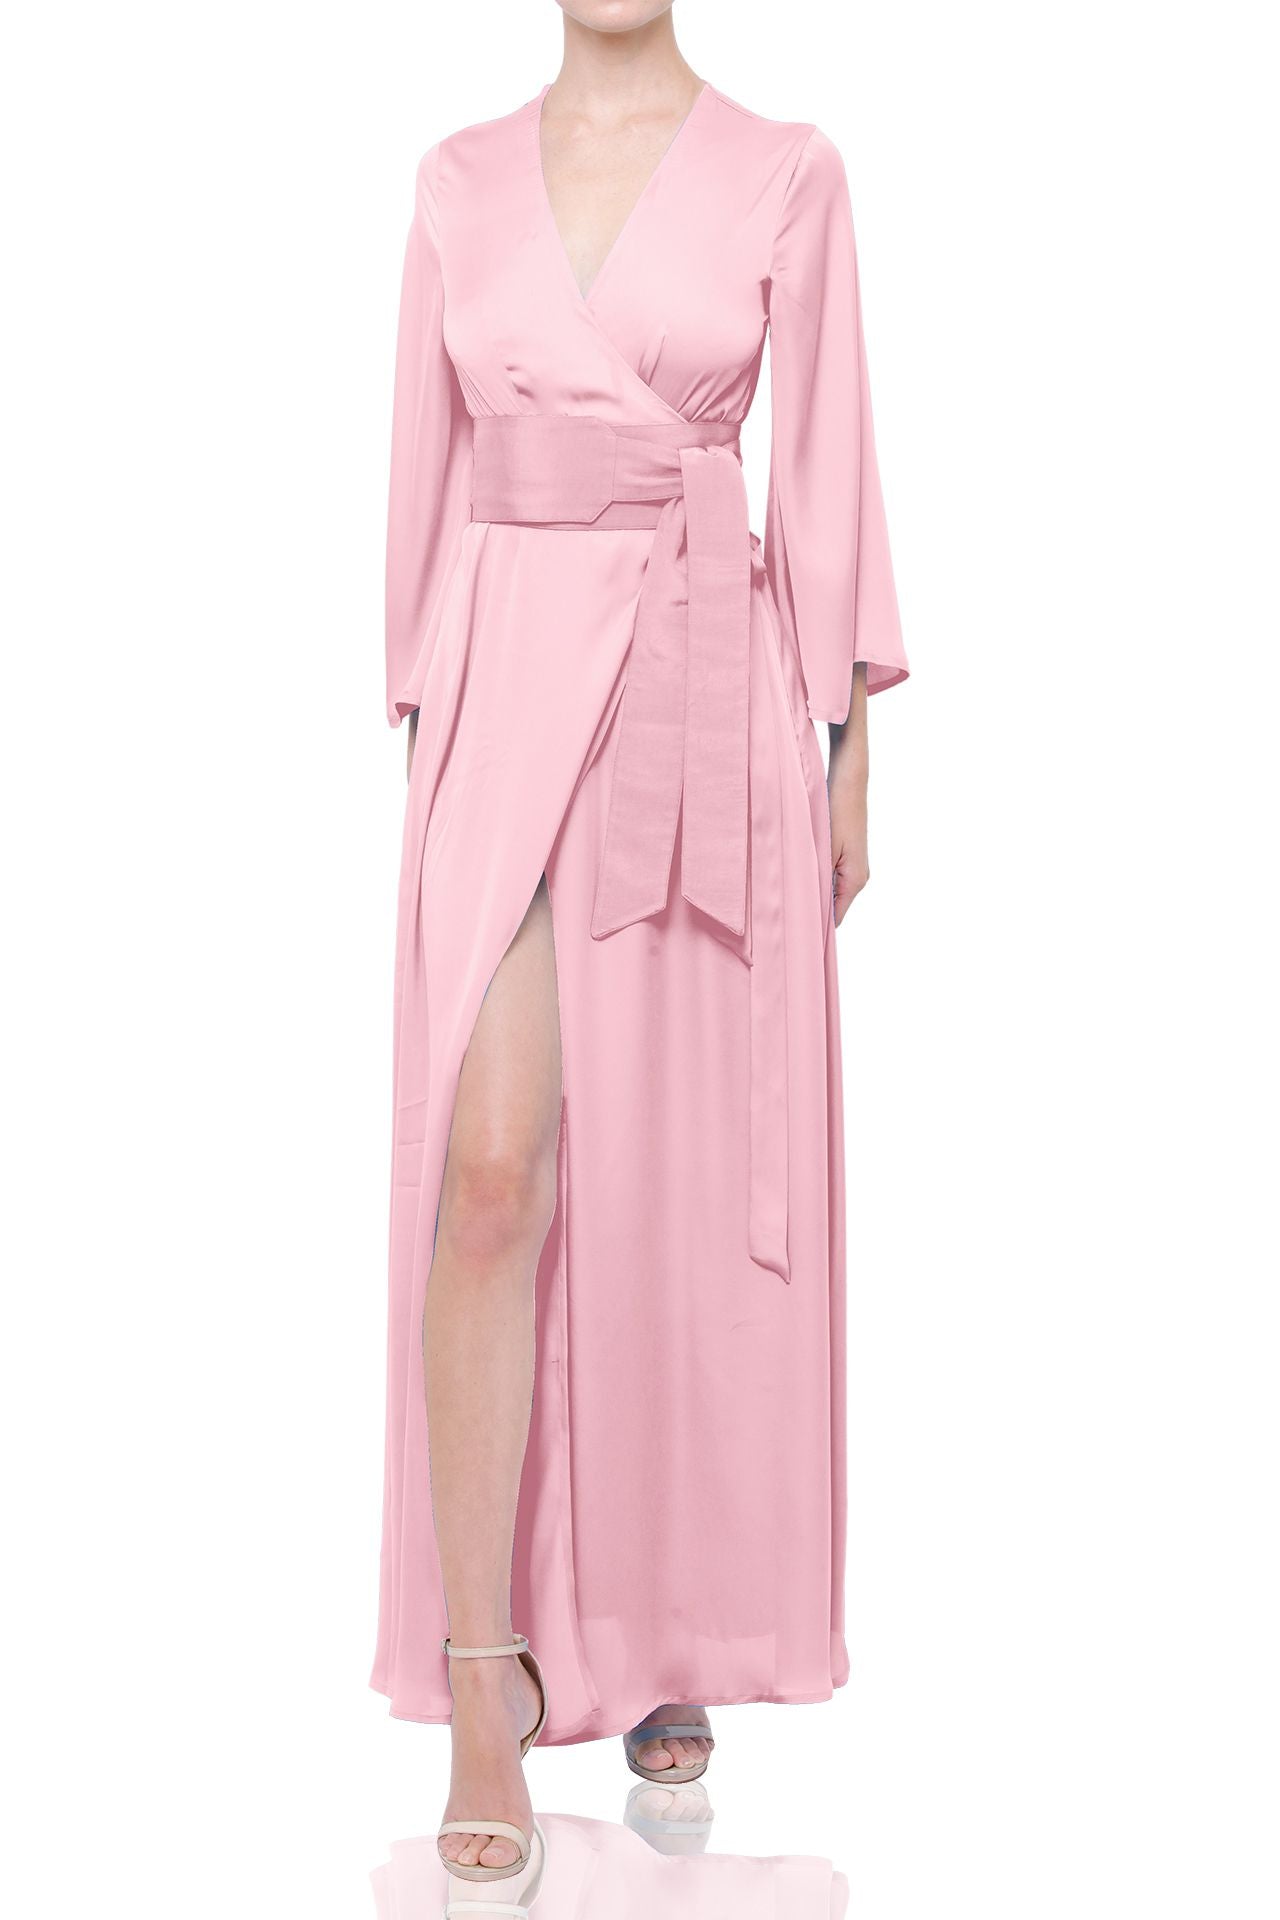 Designer Long Maxi Full Sleeve Wrap Dress for 2022